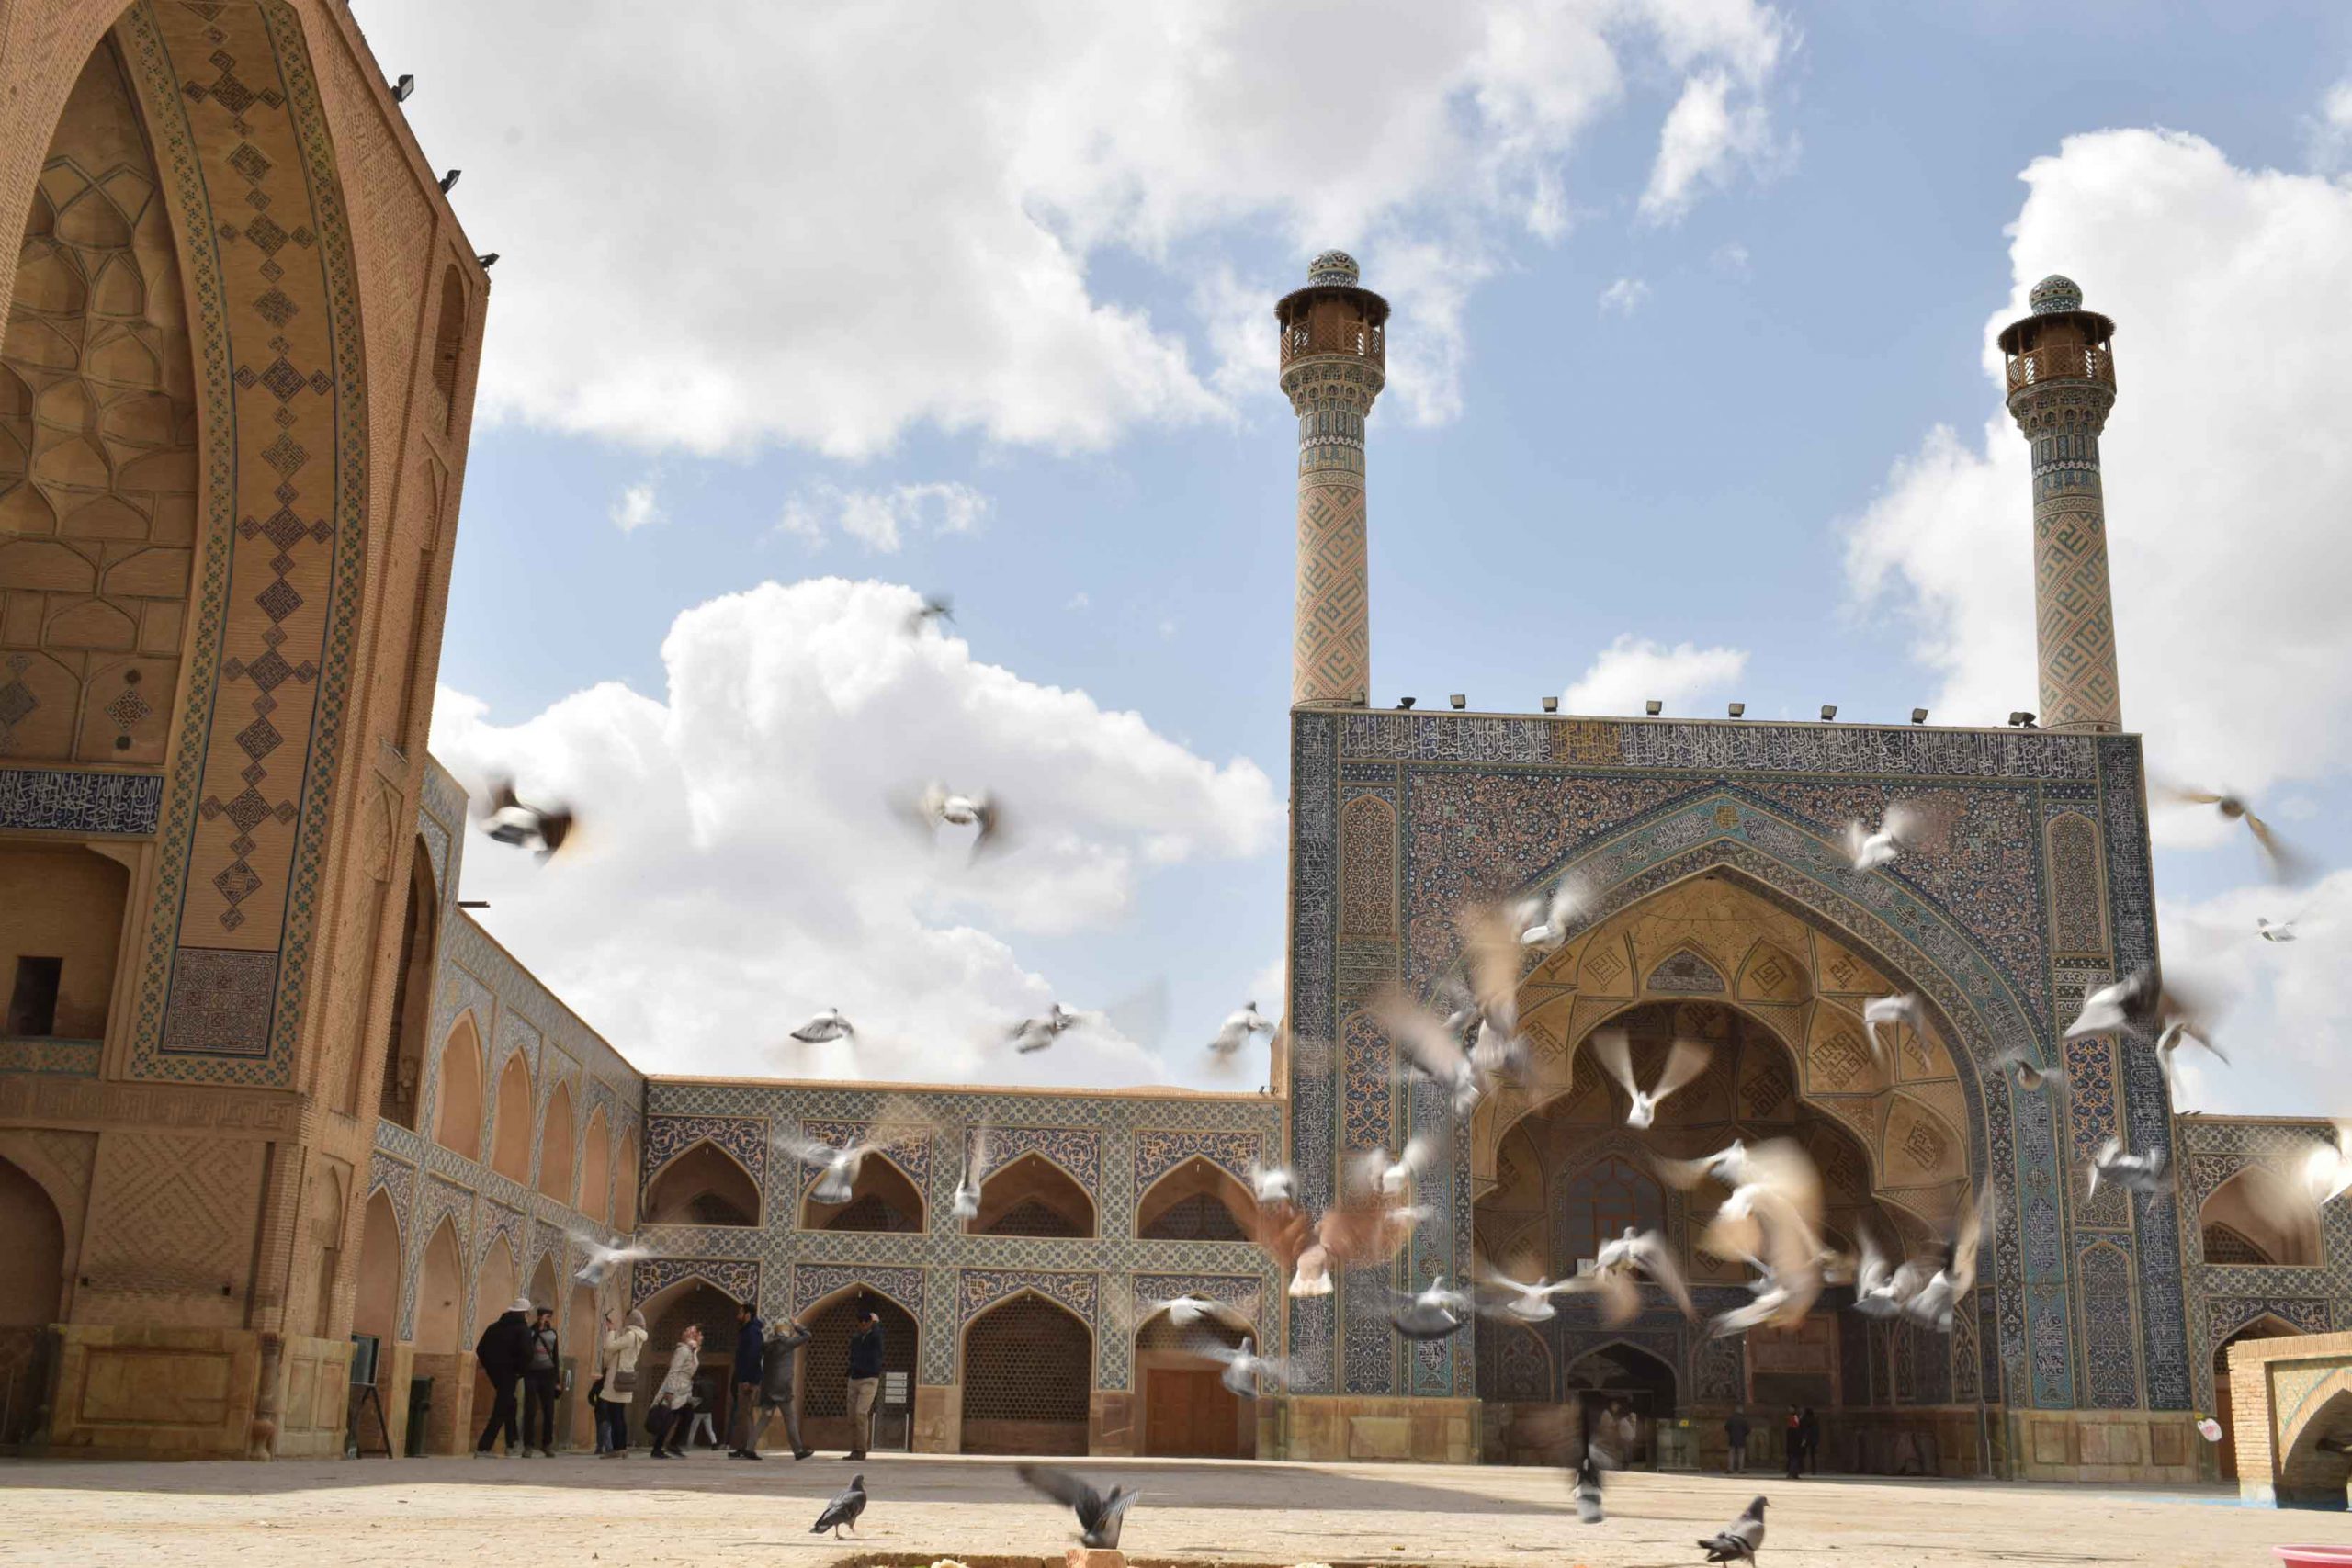 مسجد جامع عتیق, اصفهان, Isfahan, Jame Mosque, Atiq